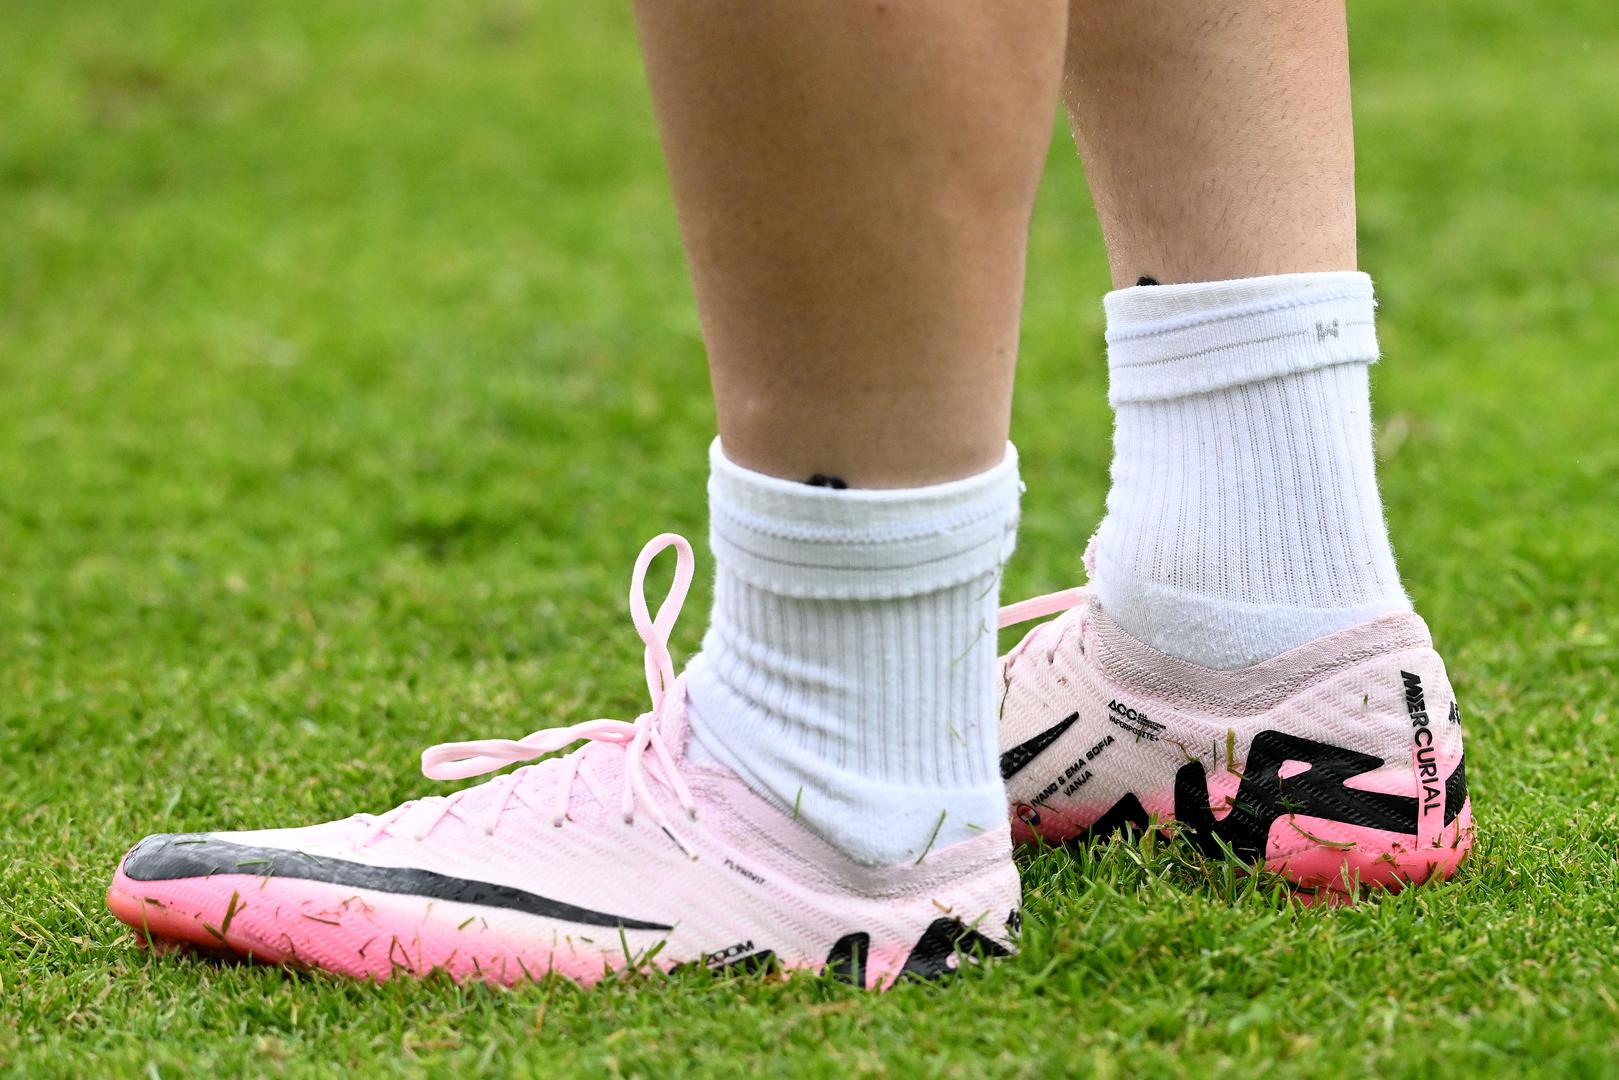 Kapetan Luka Modrić predvodnik je s novim kopačkama Nike u ružičastoj boji